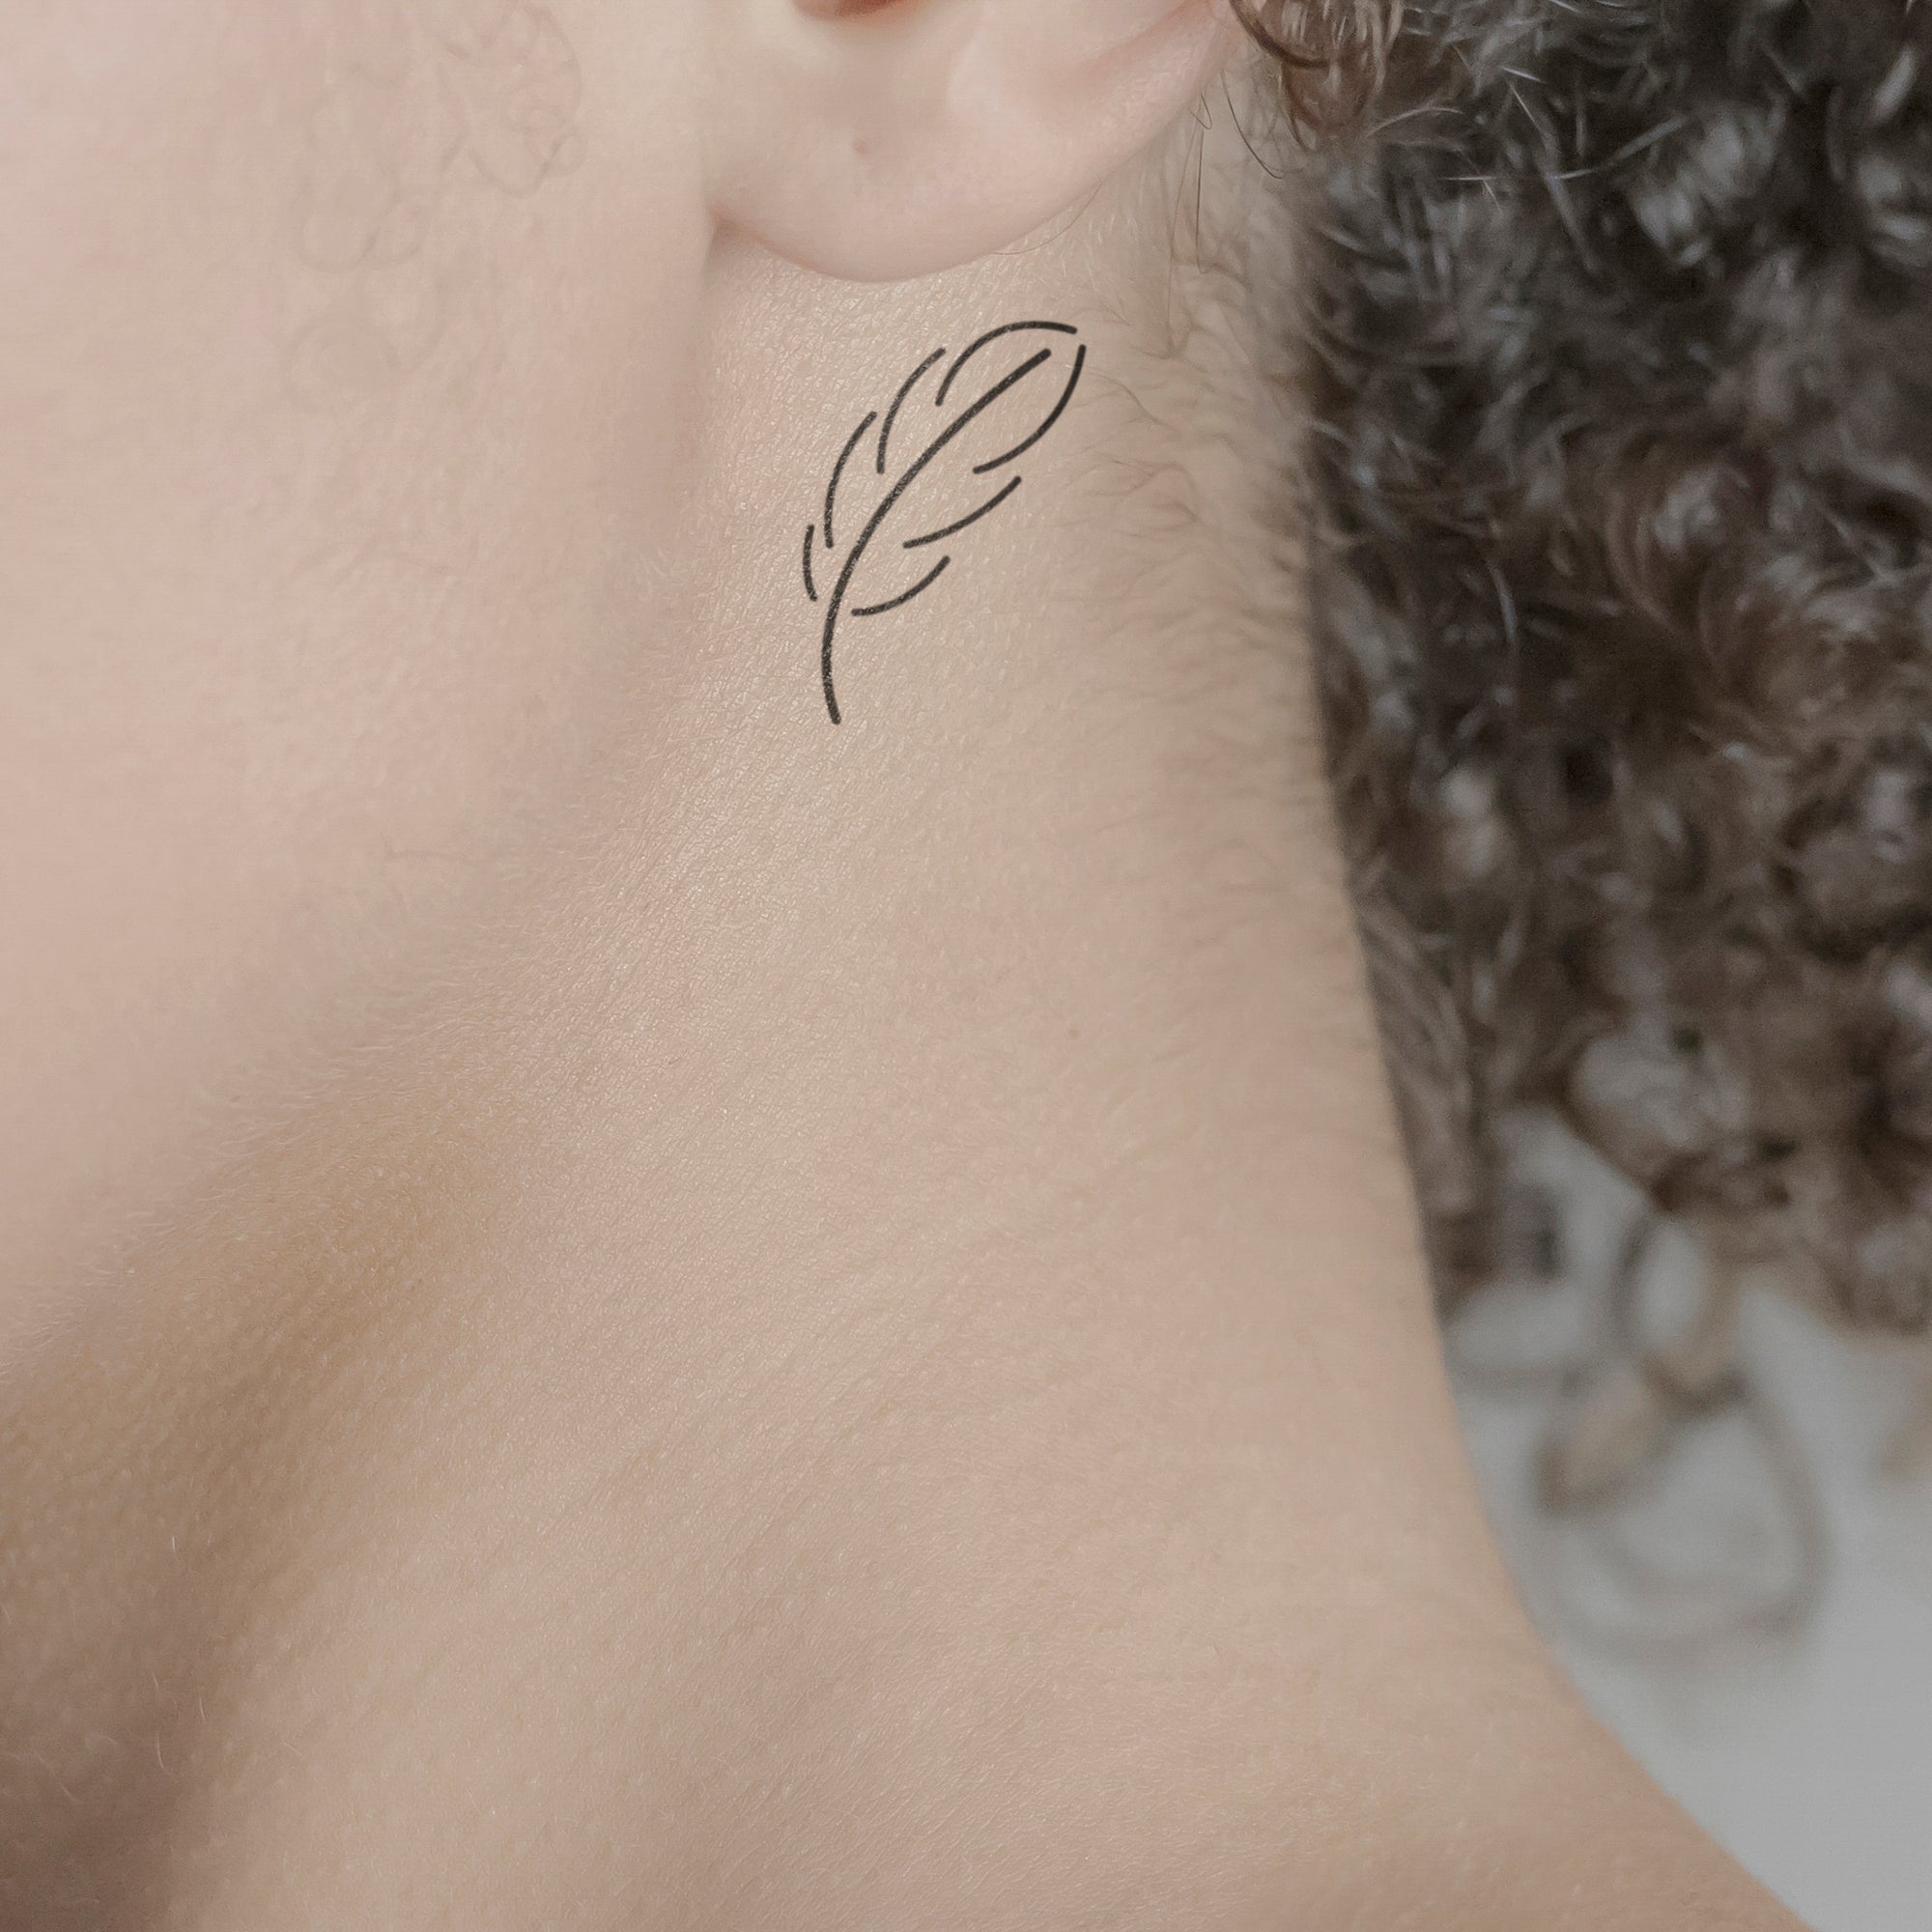 neck feather tattoo ideas #necktattoo #featherstattoo - YouTube